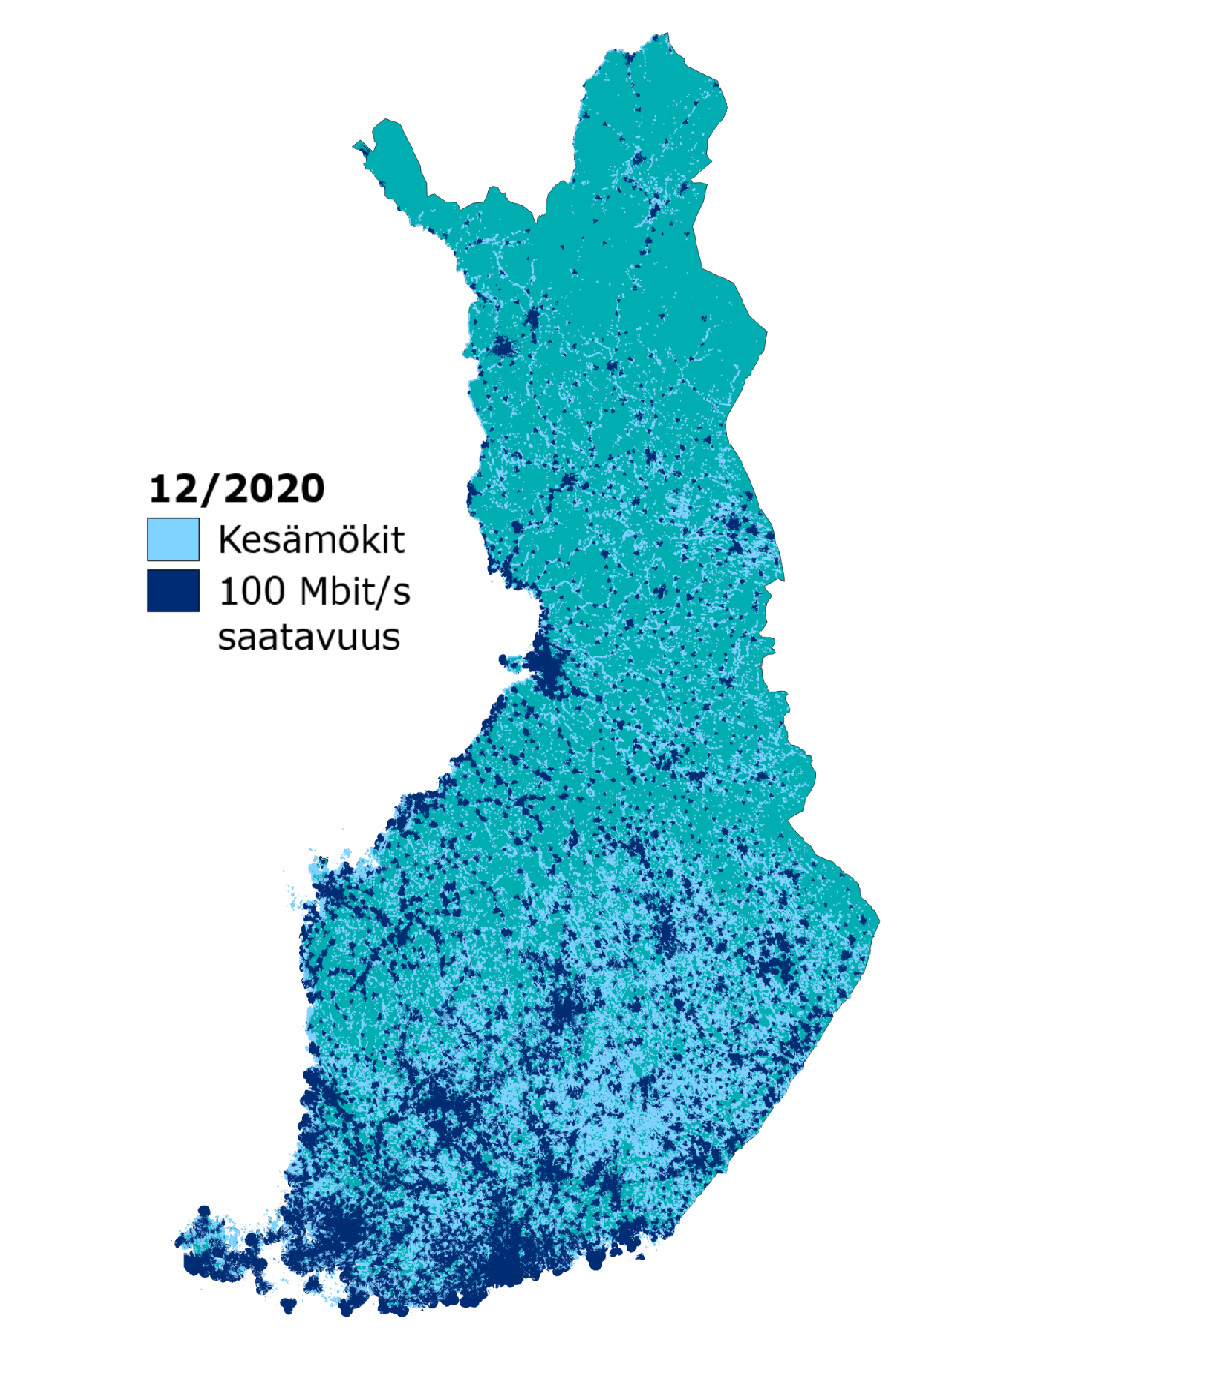 Nopean laajakaistan saatavuus kesämökeille vuoden 2020 lopussa. Saatavuus keskittyy Etelä- ja Lounais-Suomen kasvukeskusten ympäristöön sekä Jyväskylän, Kuopion ja Oulun seuduille. Muualla maassa saatavuus on hajanaisempaa.